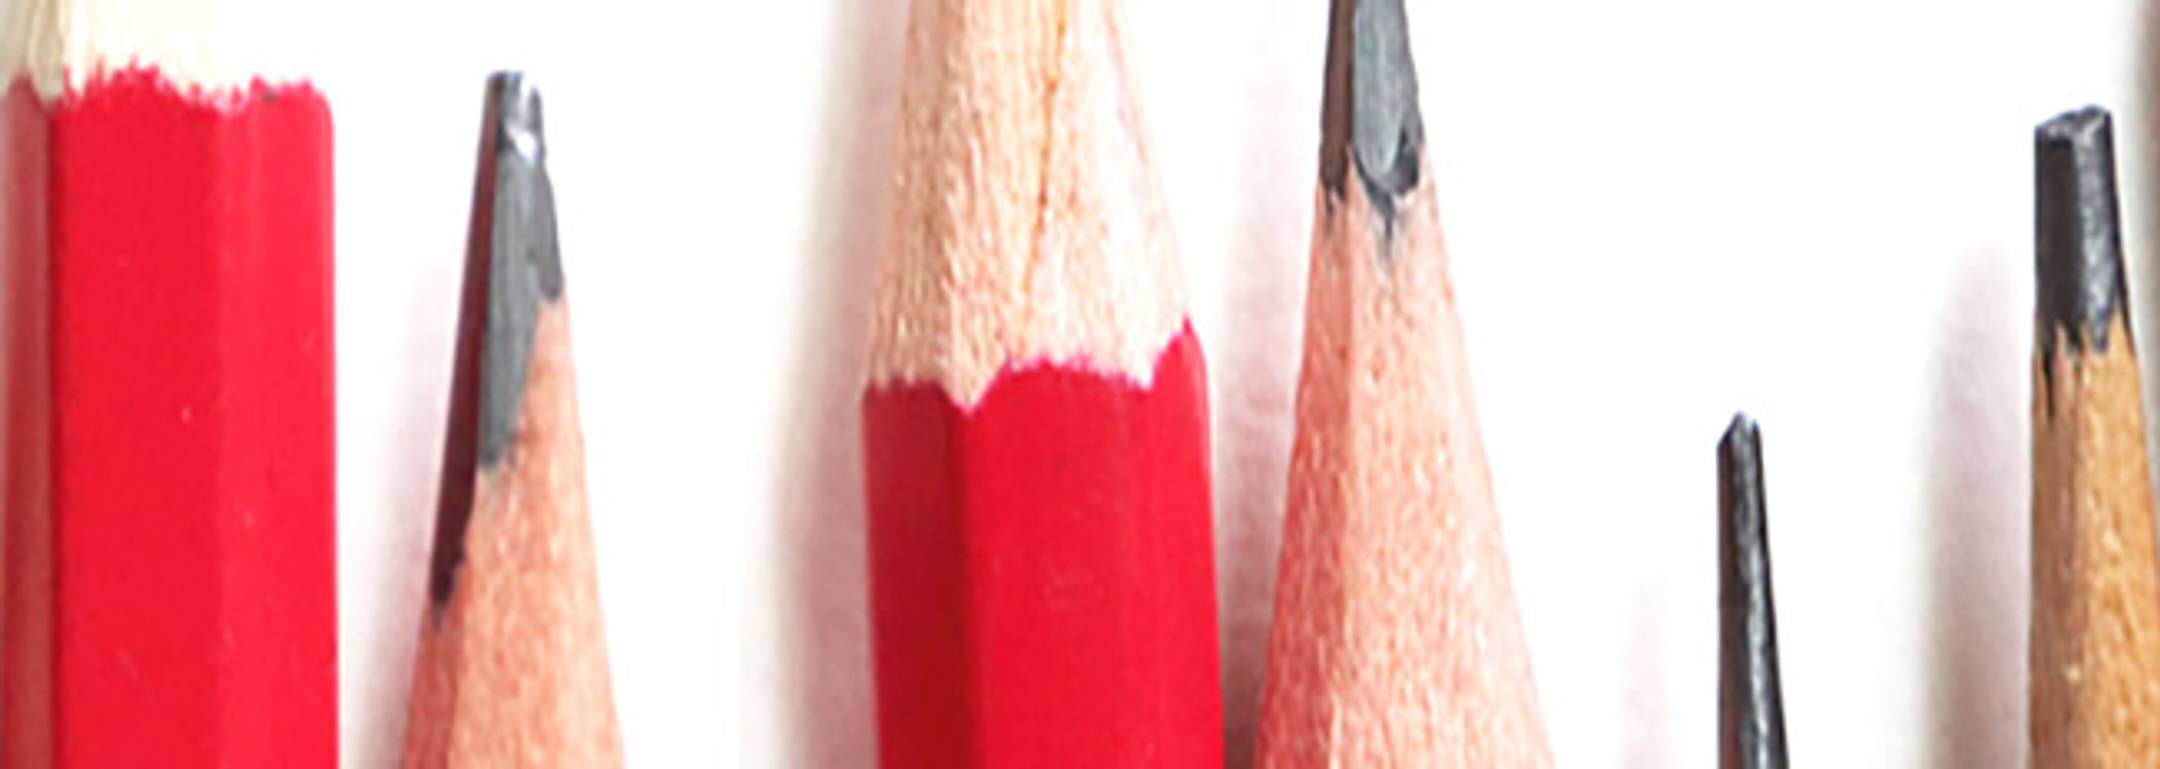 Woodless Graphite Pencils 